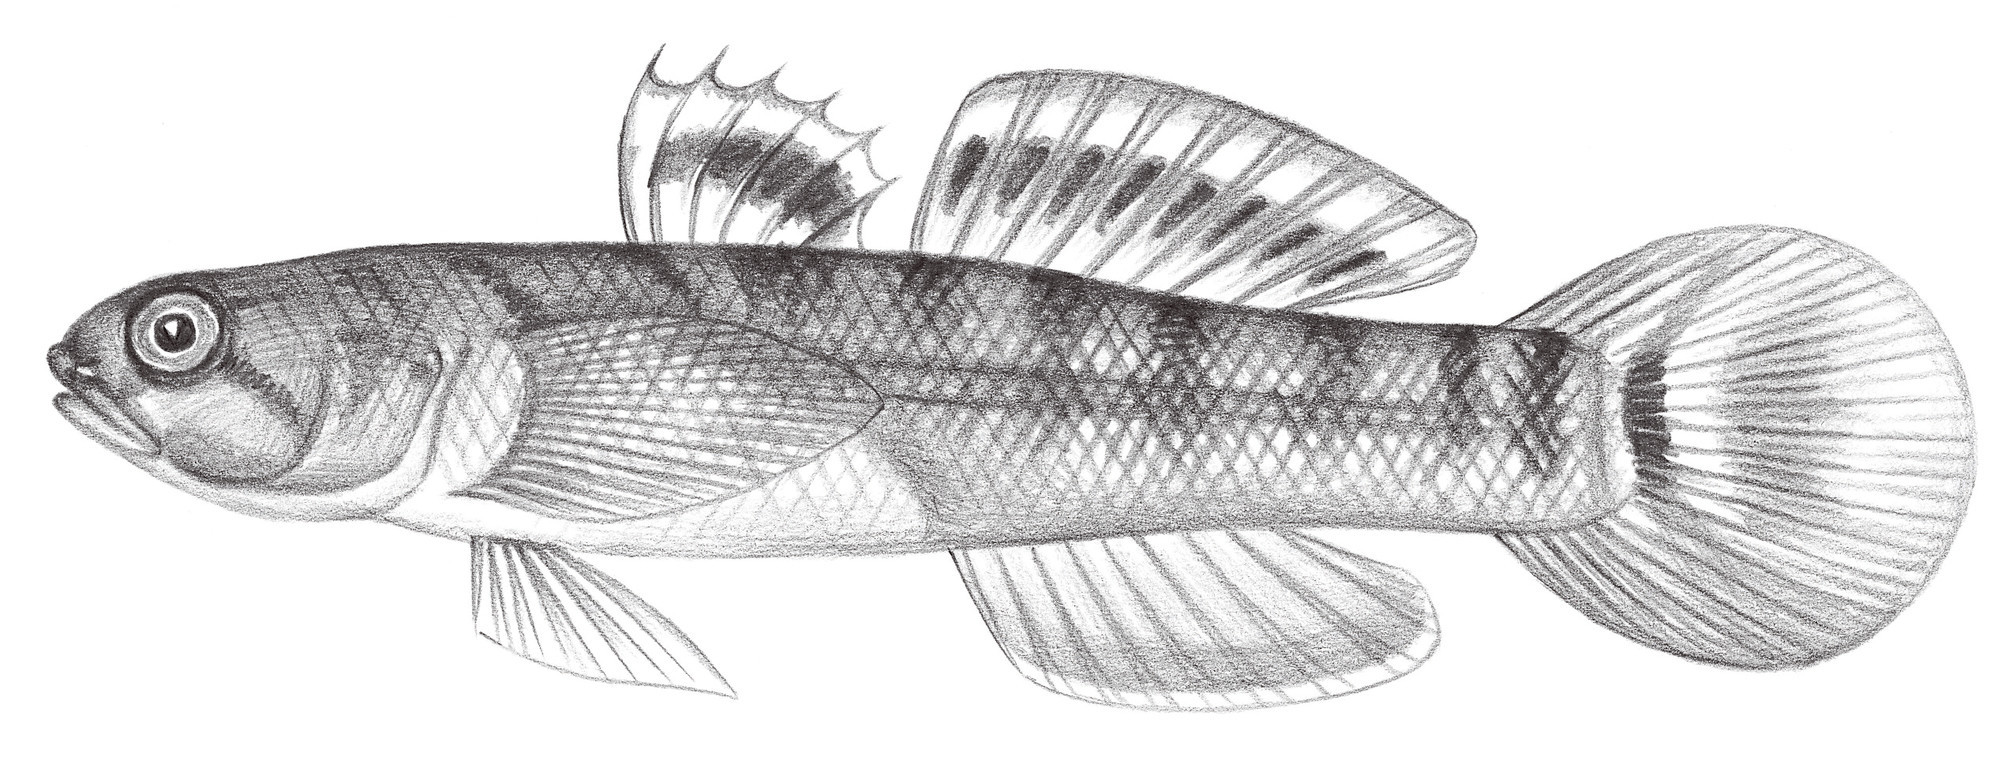 2222.	小鯔鰕虎 Mugilogobius parvus (Oshima, 1919)